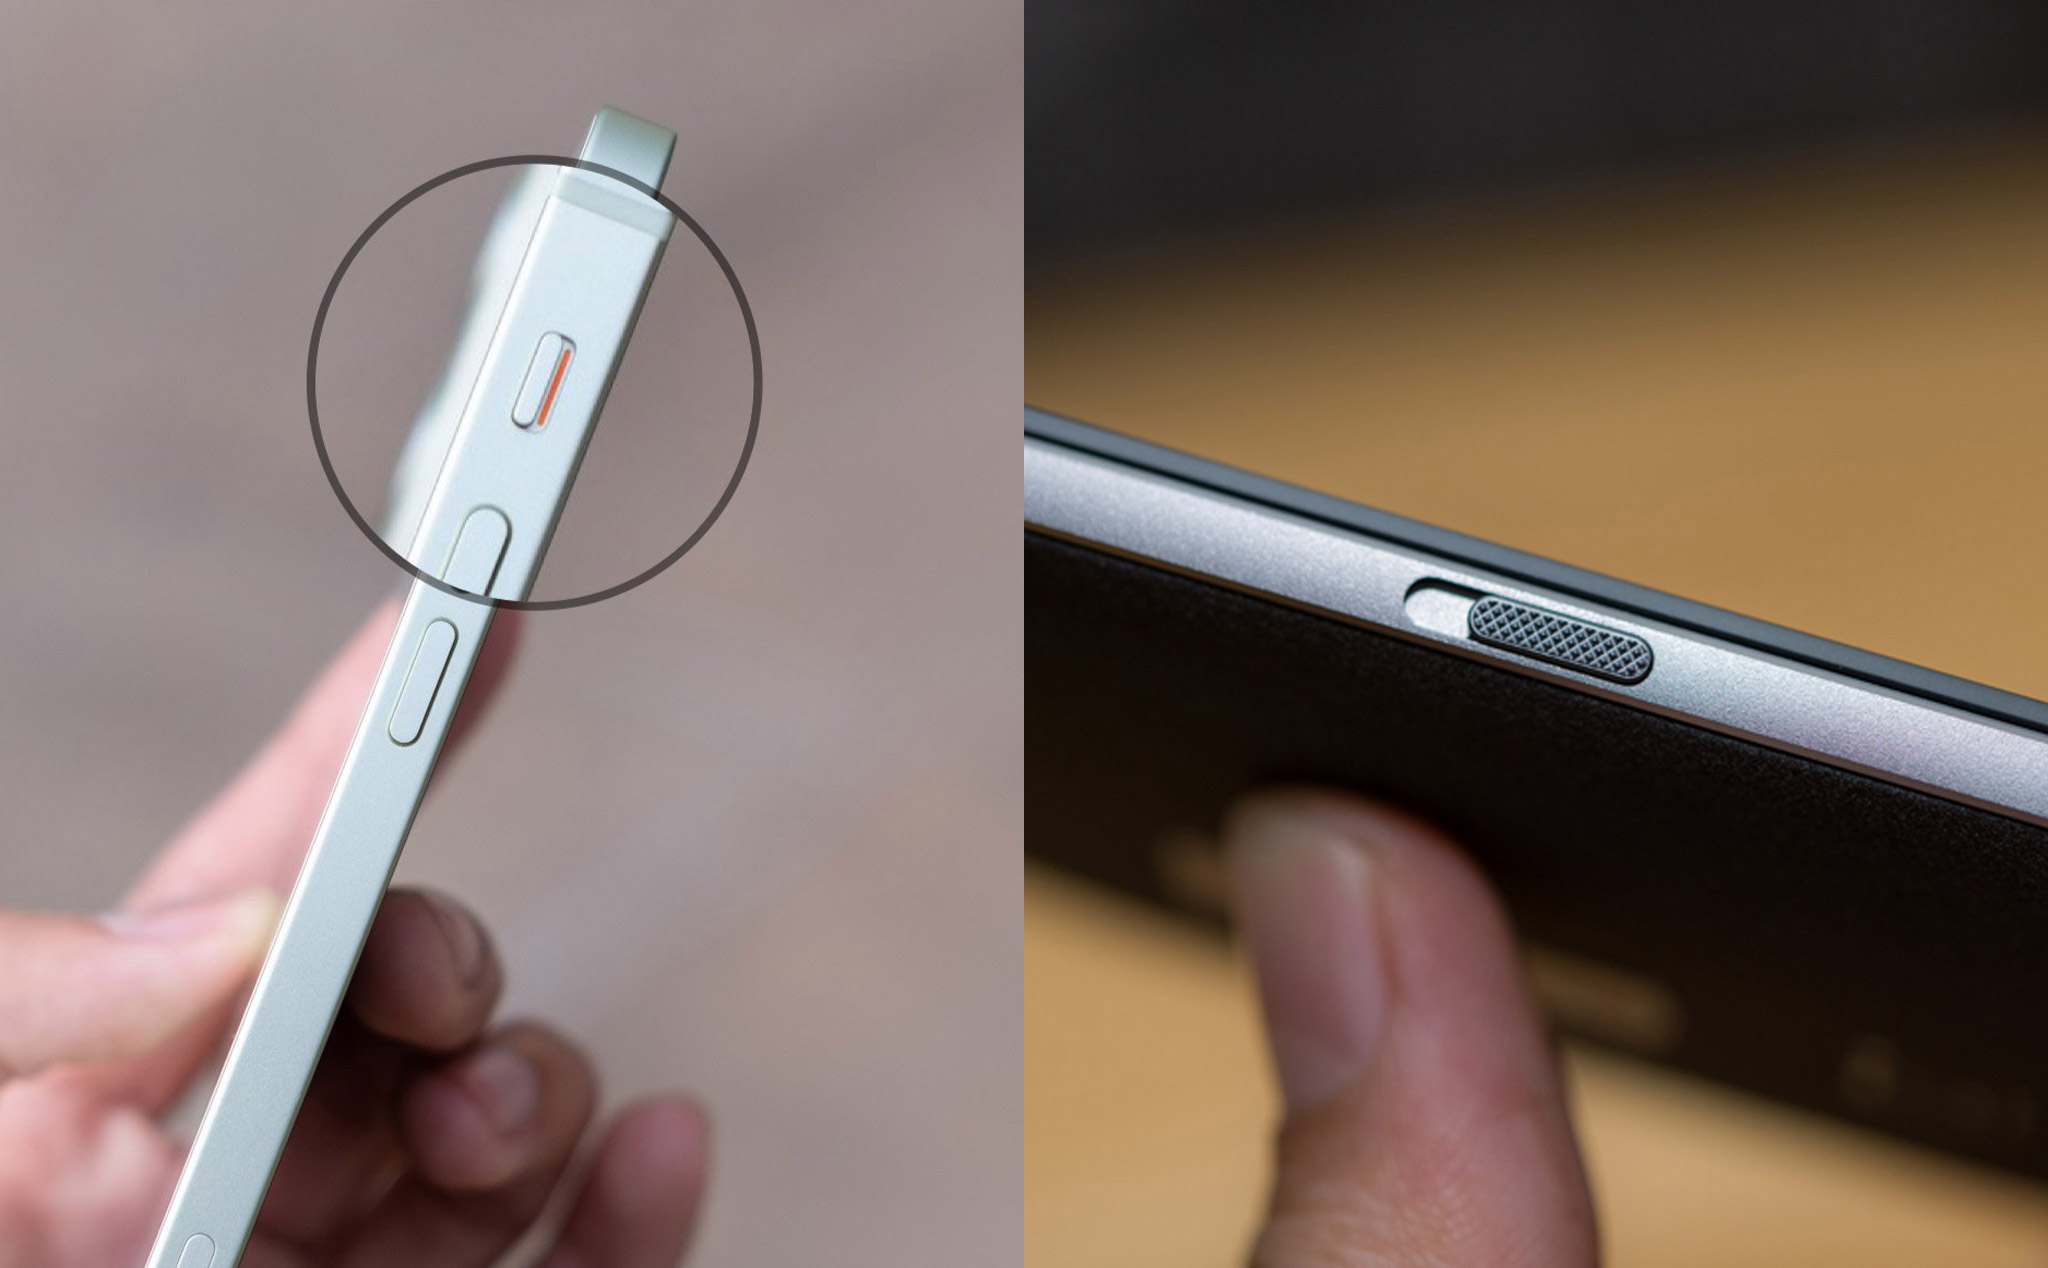 Tại sao không có hãng sản xuất nào làm nút gạt tắt tiếng như Apple và OnePlus?